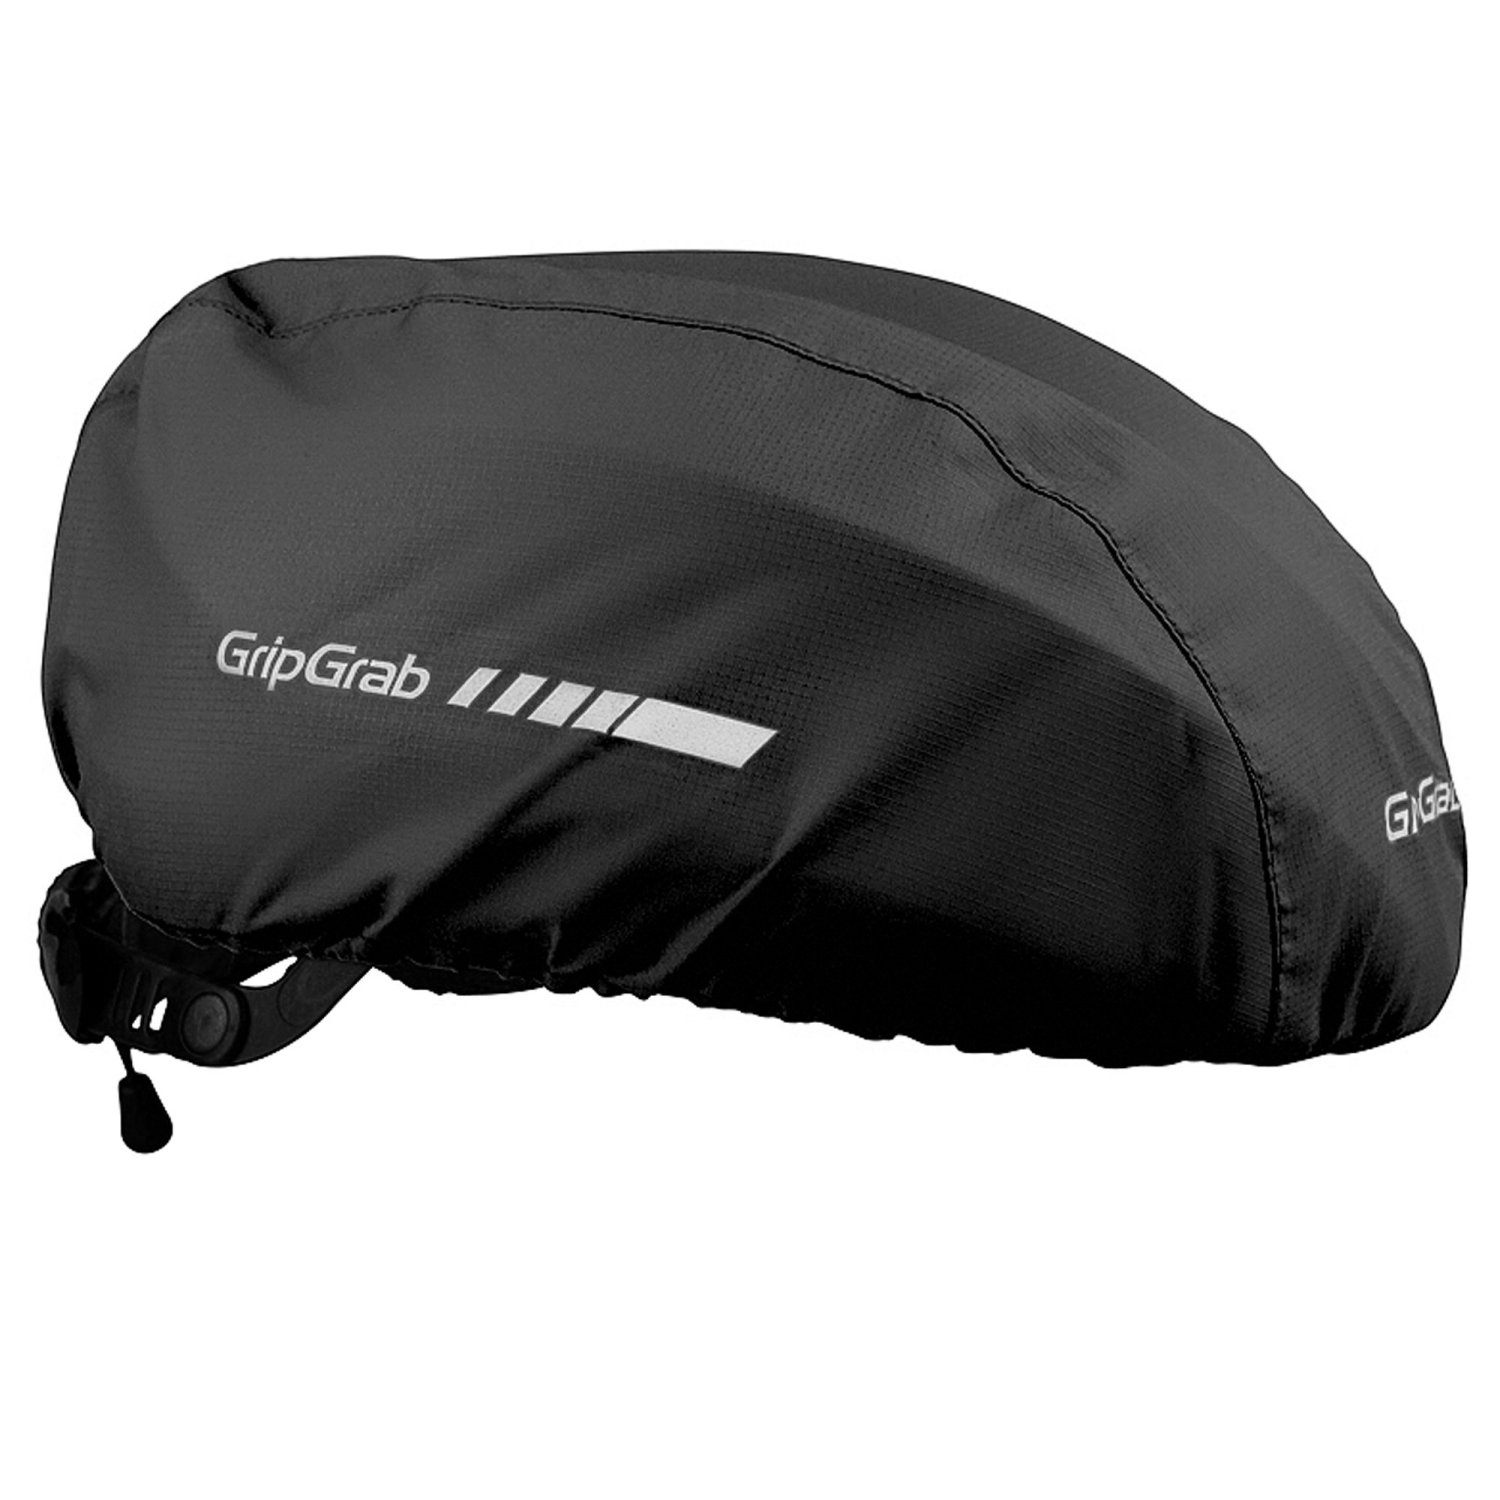 Чехол на шлем GripGrab Helmet Cover Hi-Vis, Black, 501101001 чехол для матраса peg perego mattress cover